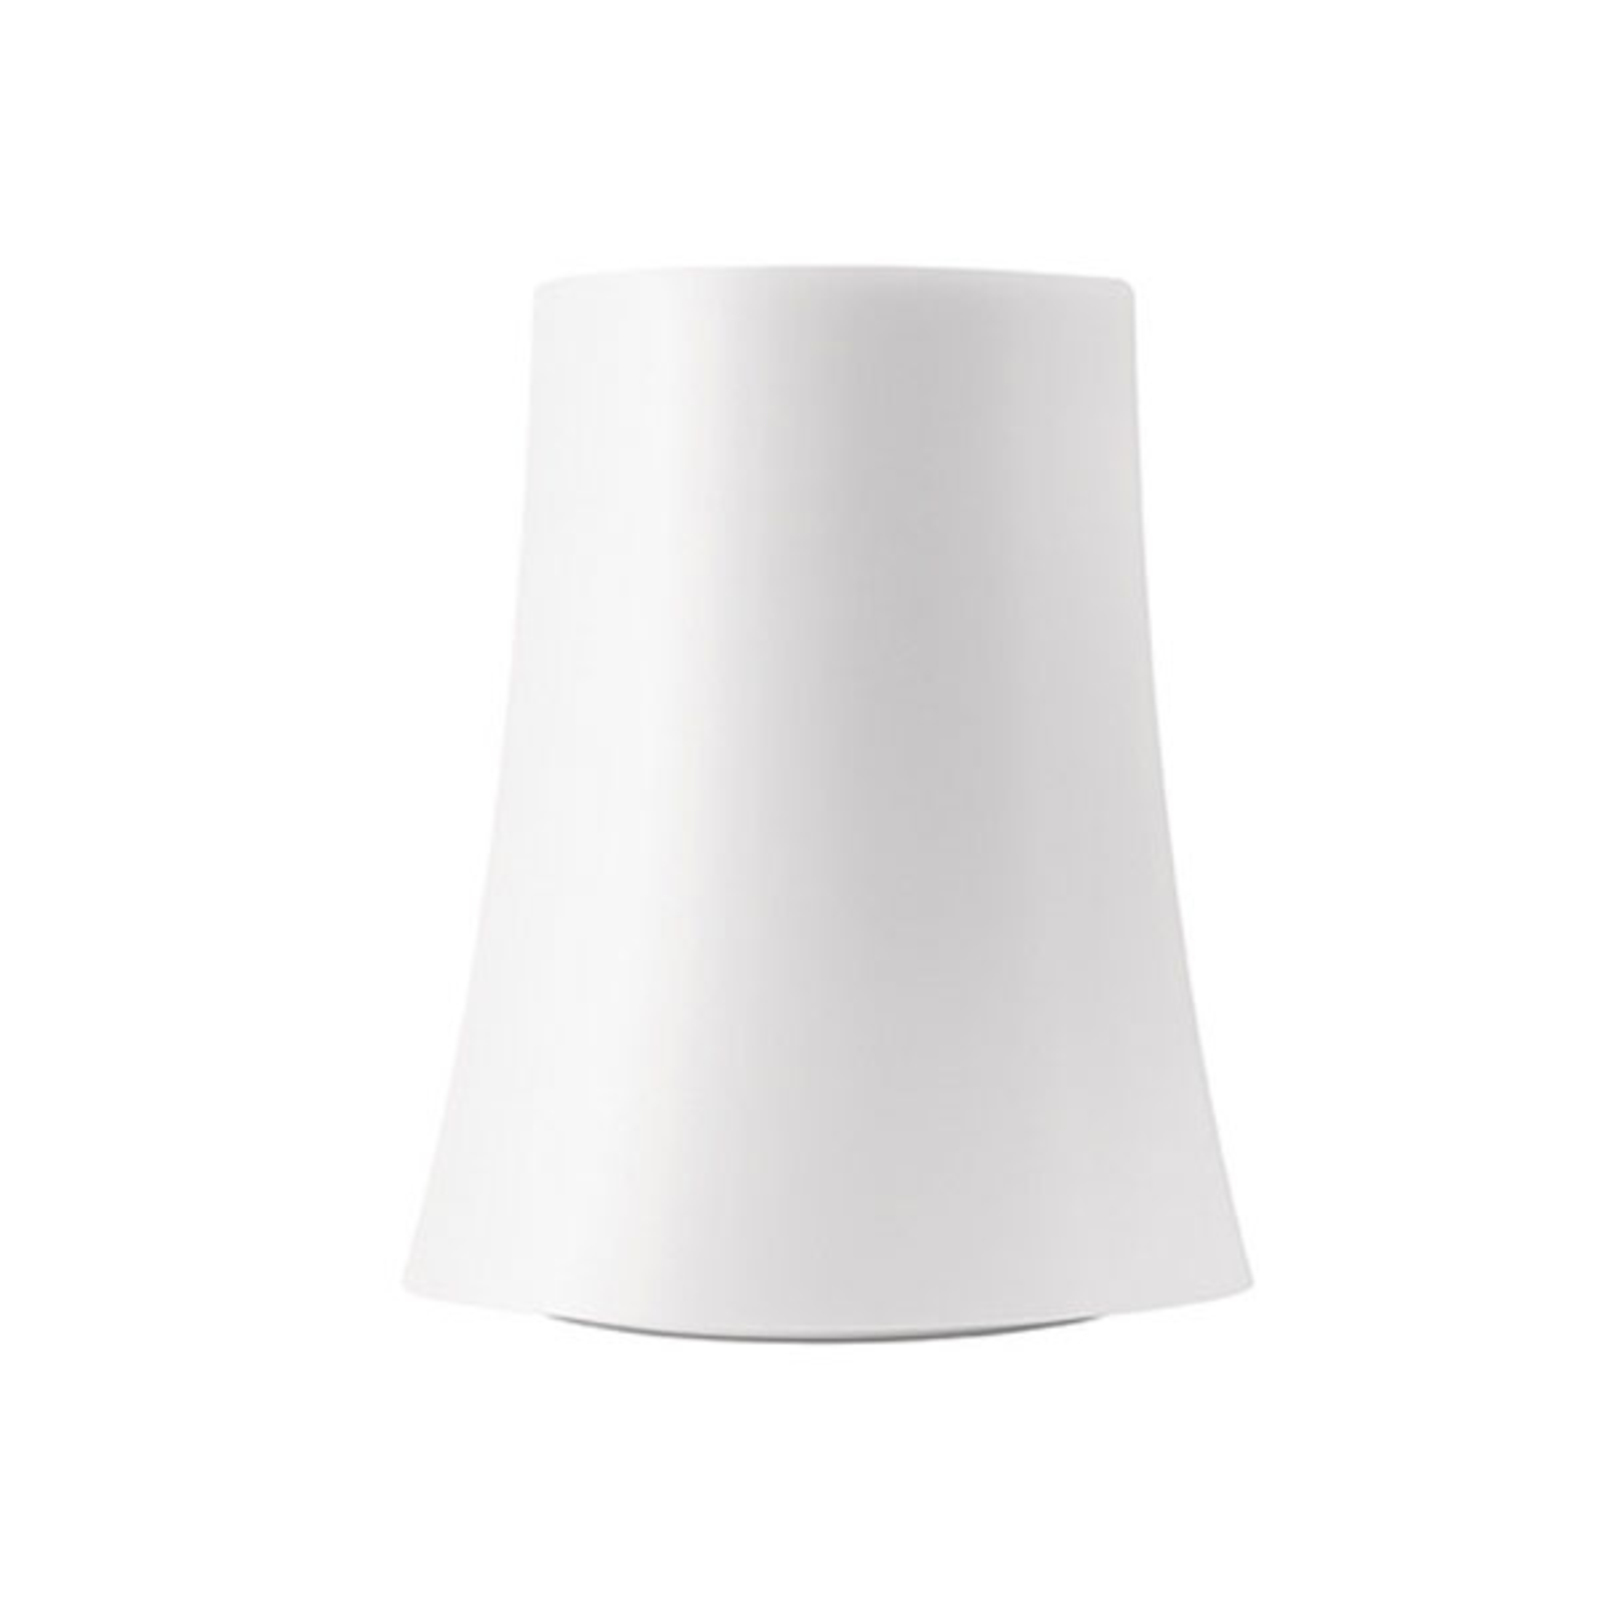 Foscarini Birdie Zero table lamp, height 20 cm